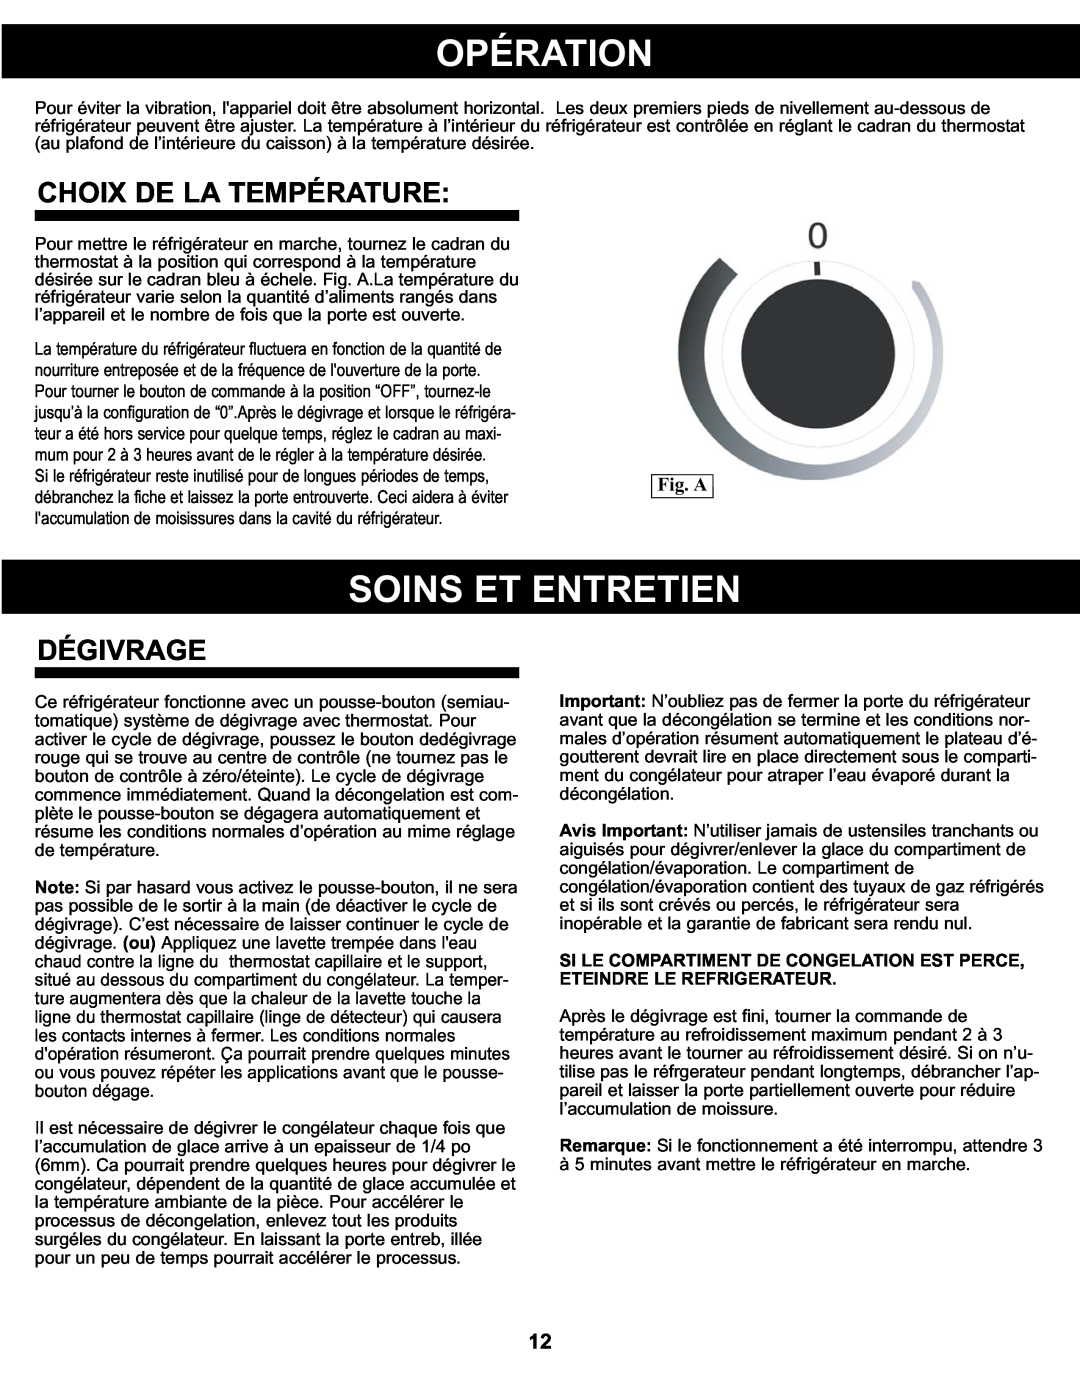 Sunbeam SBCR122BSL manual Opération, Soins Et Entretien, Choix De La Température, Dégivrage, Fig. A 